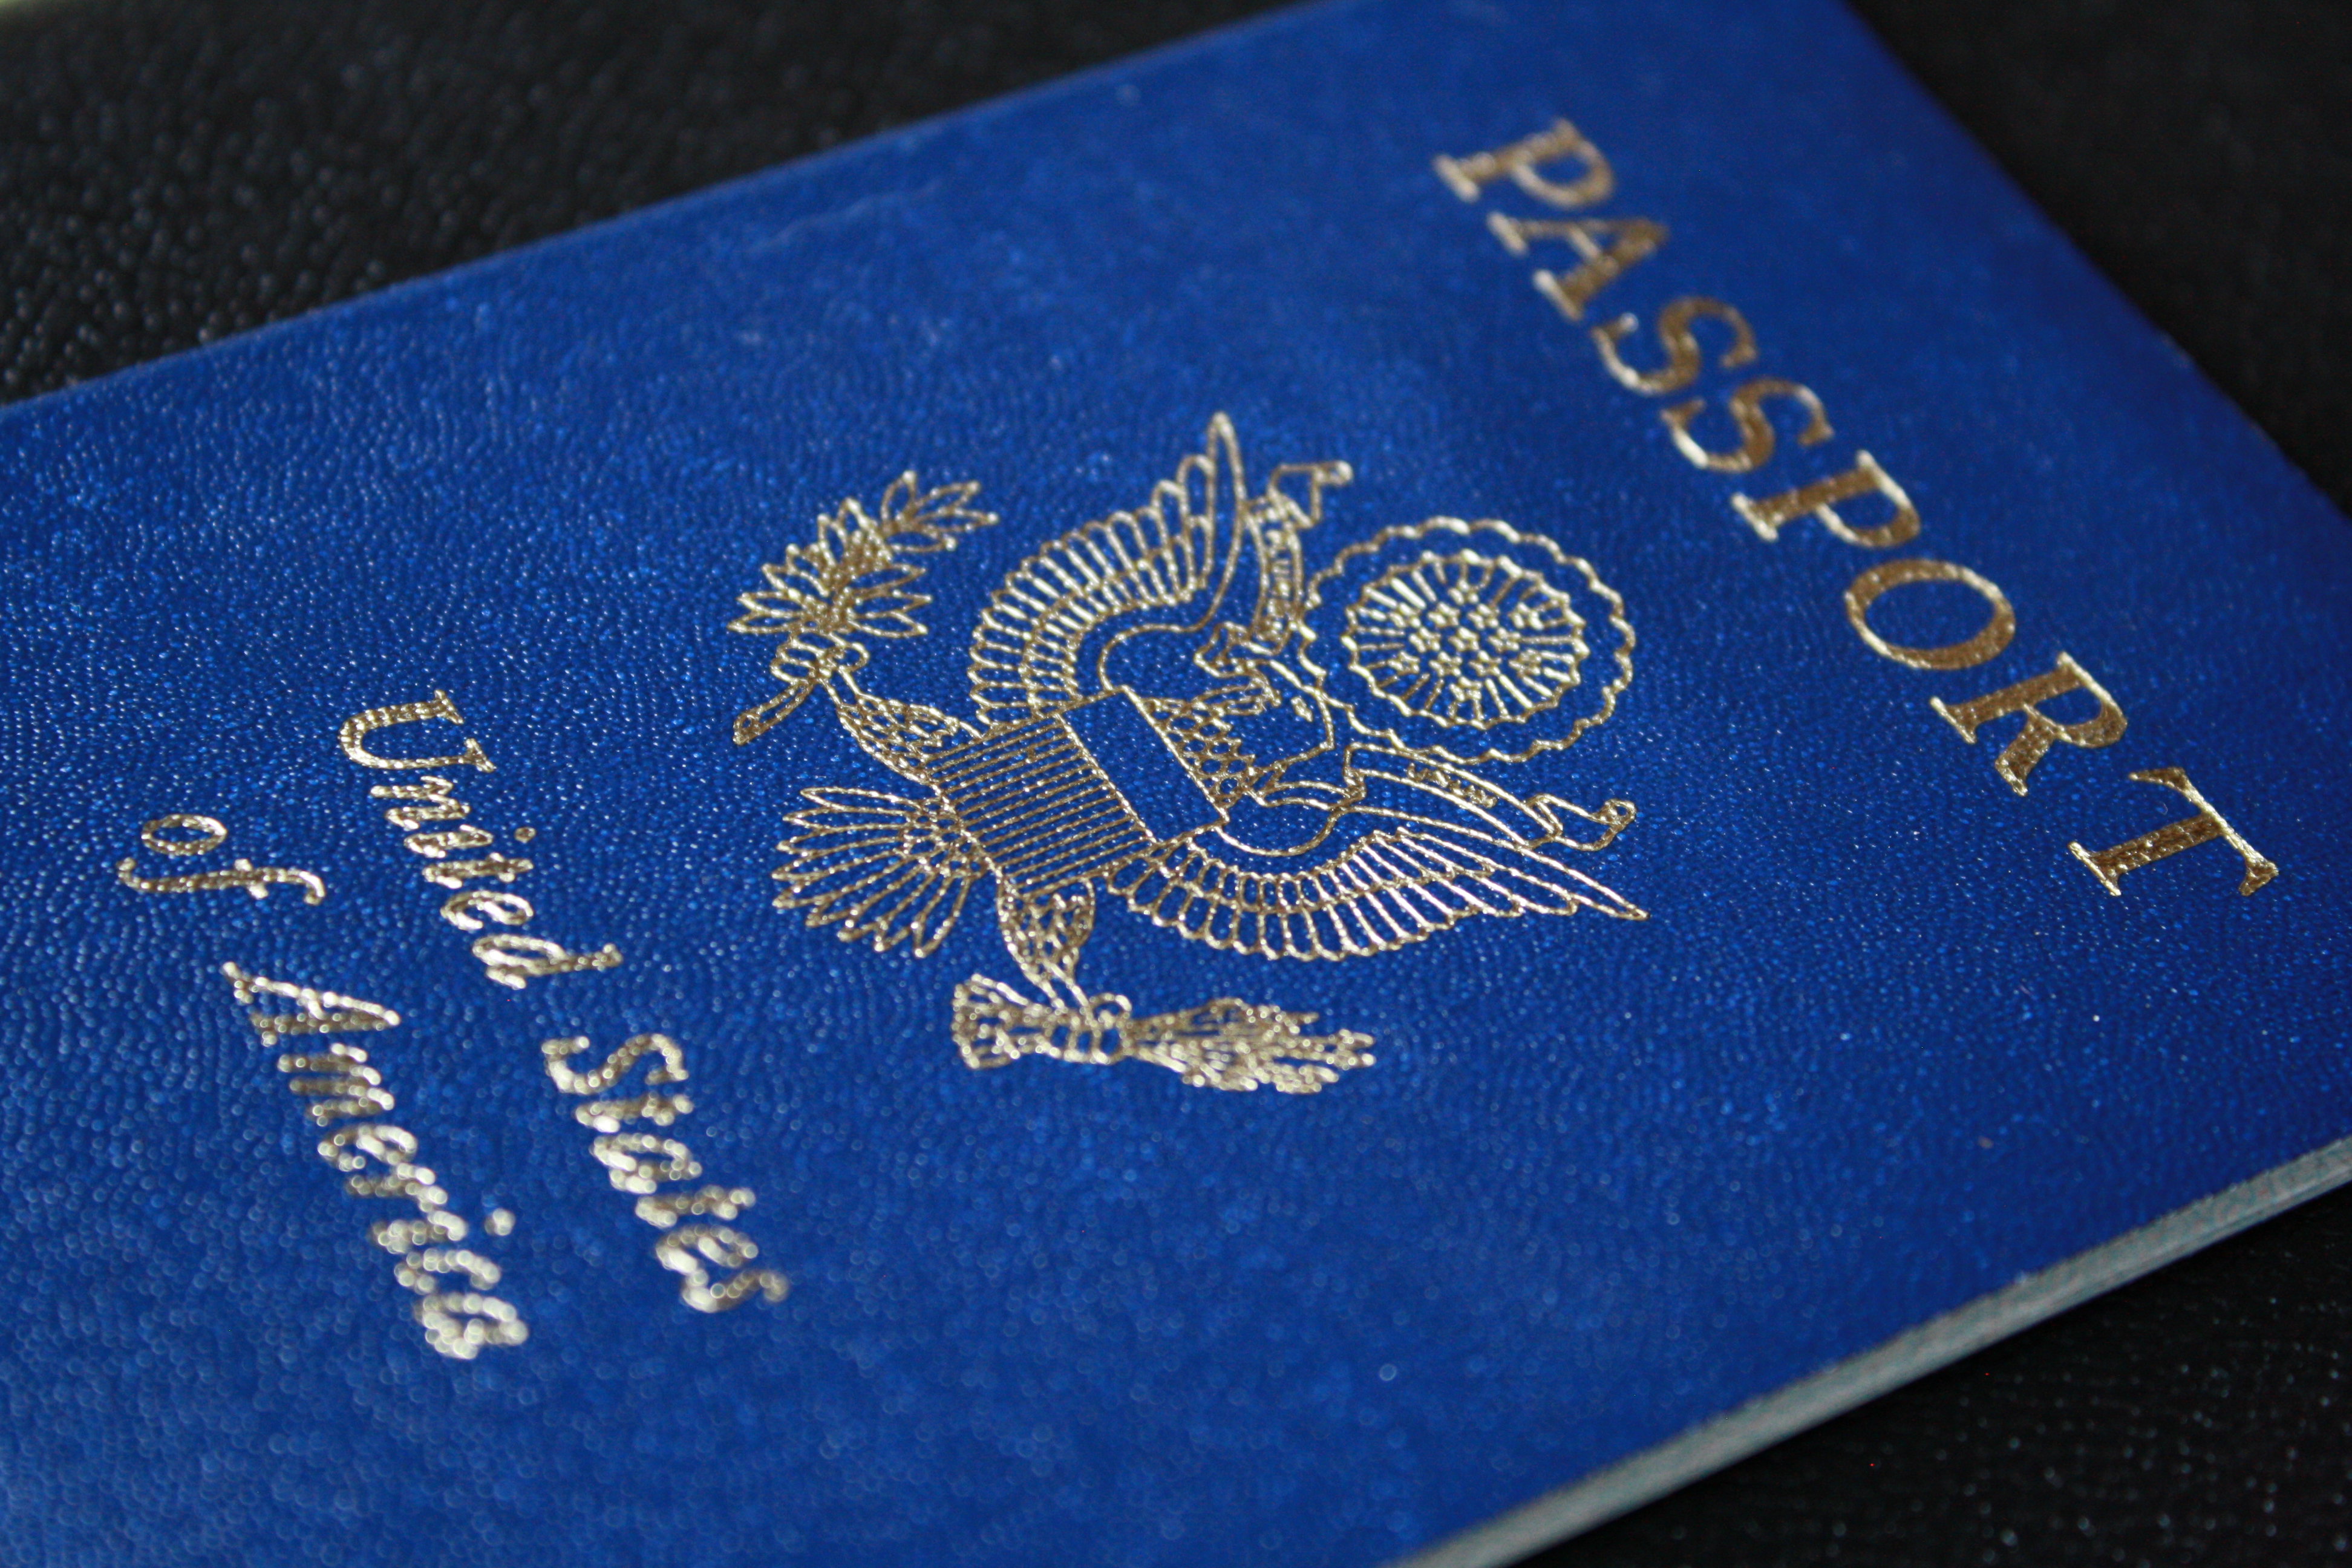 us-passport-picture-free-photograph-photos-public-domain